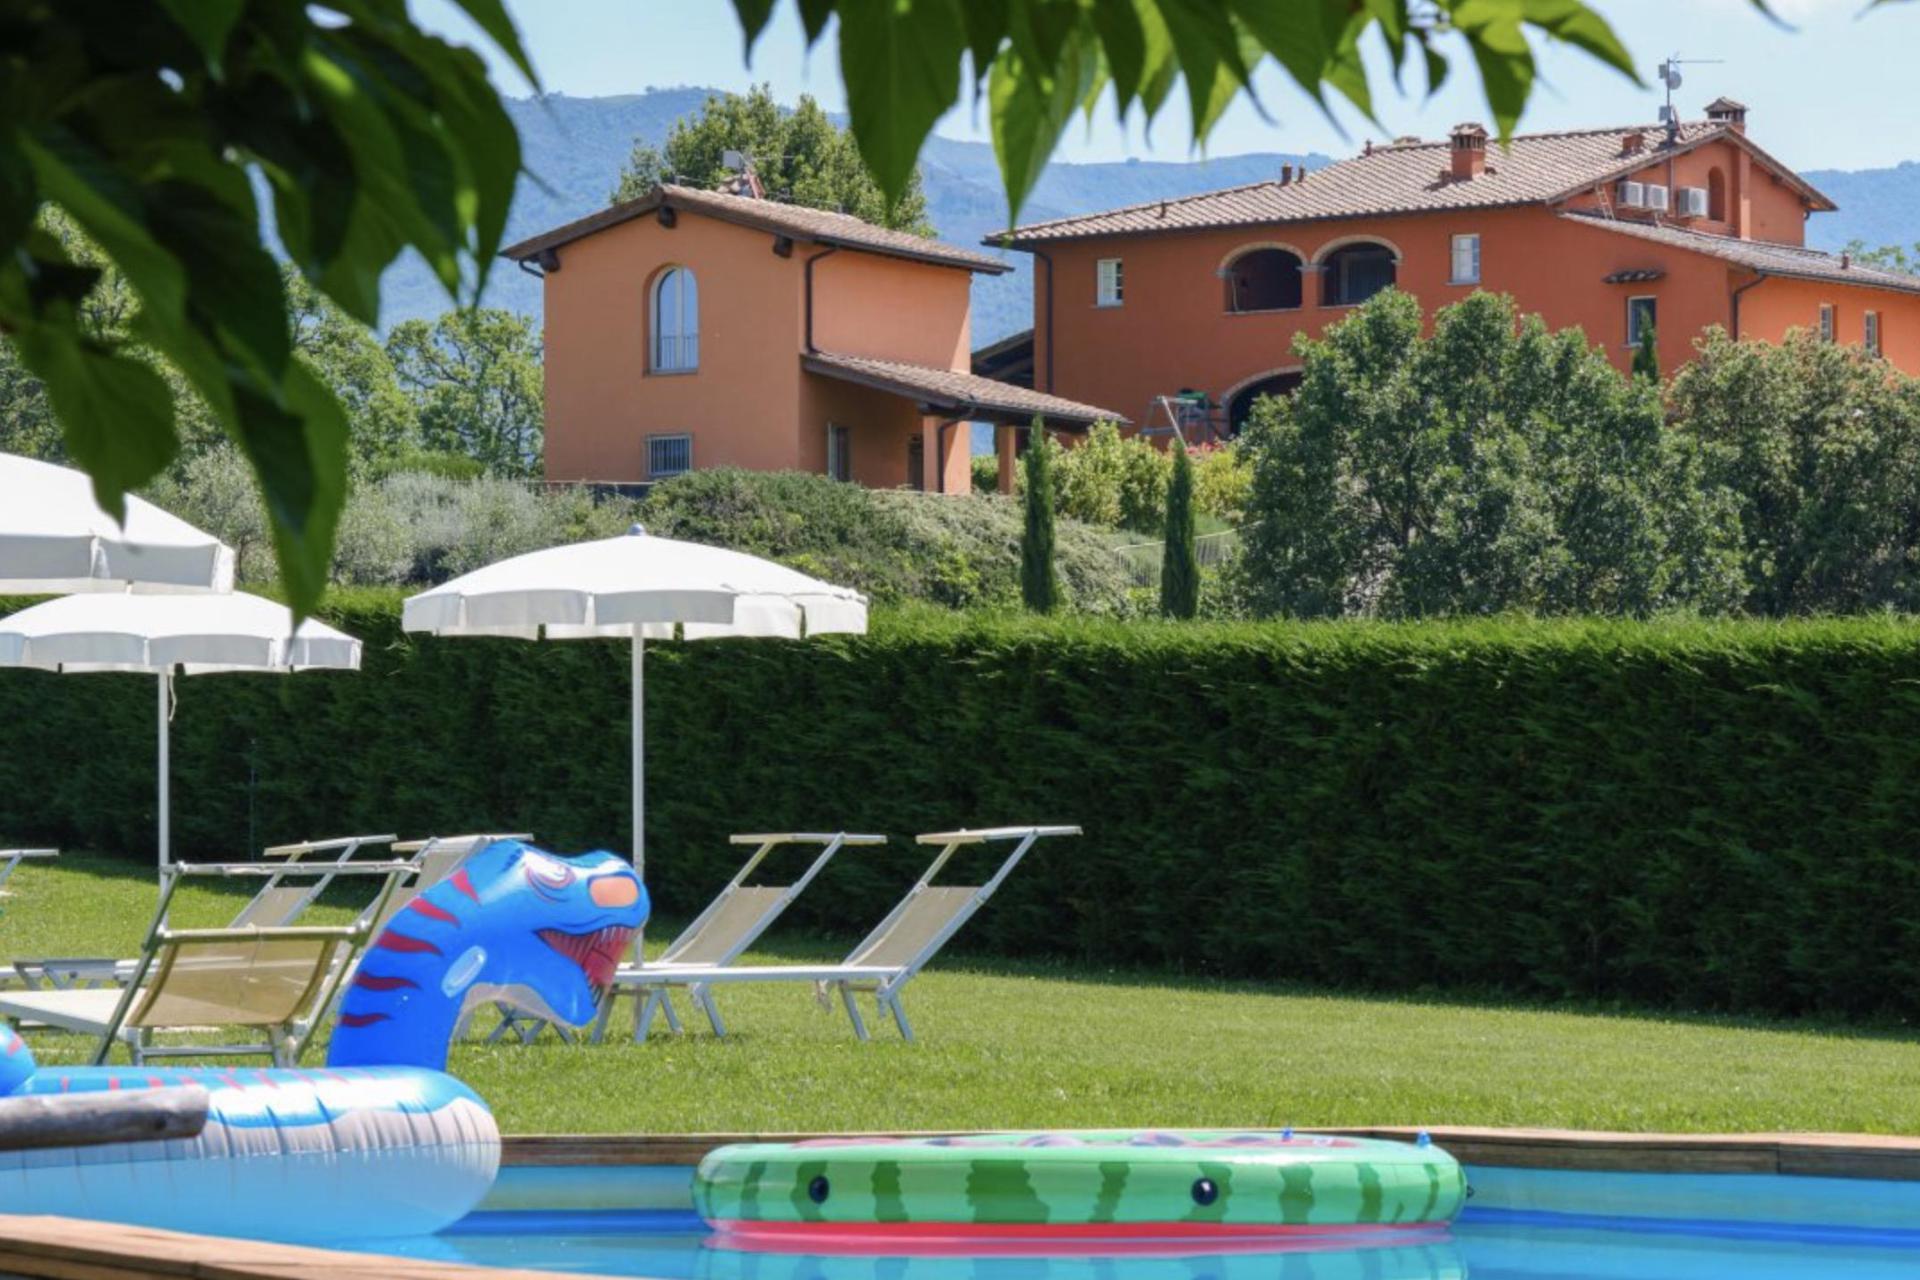 3. Appartamenti per famiglie in Toscane